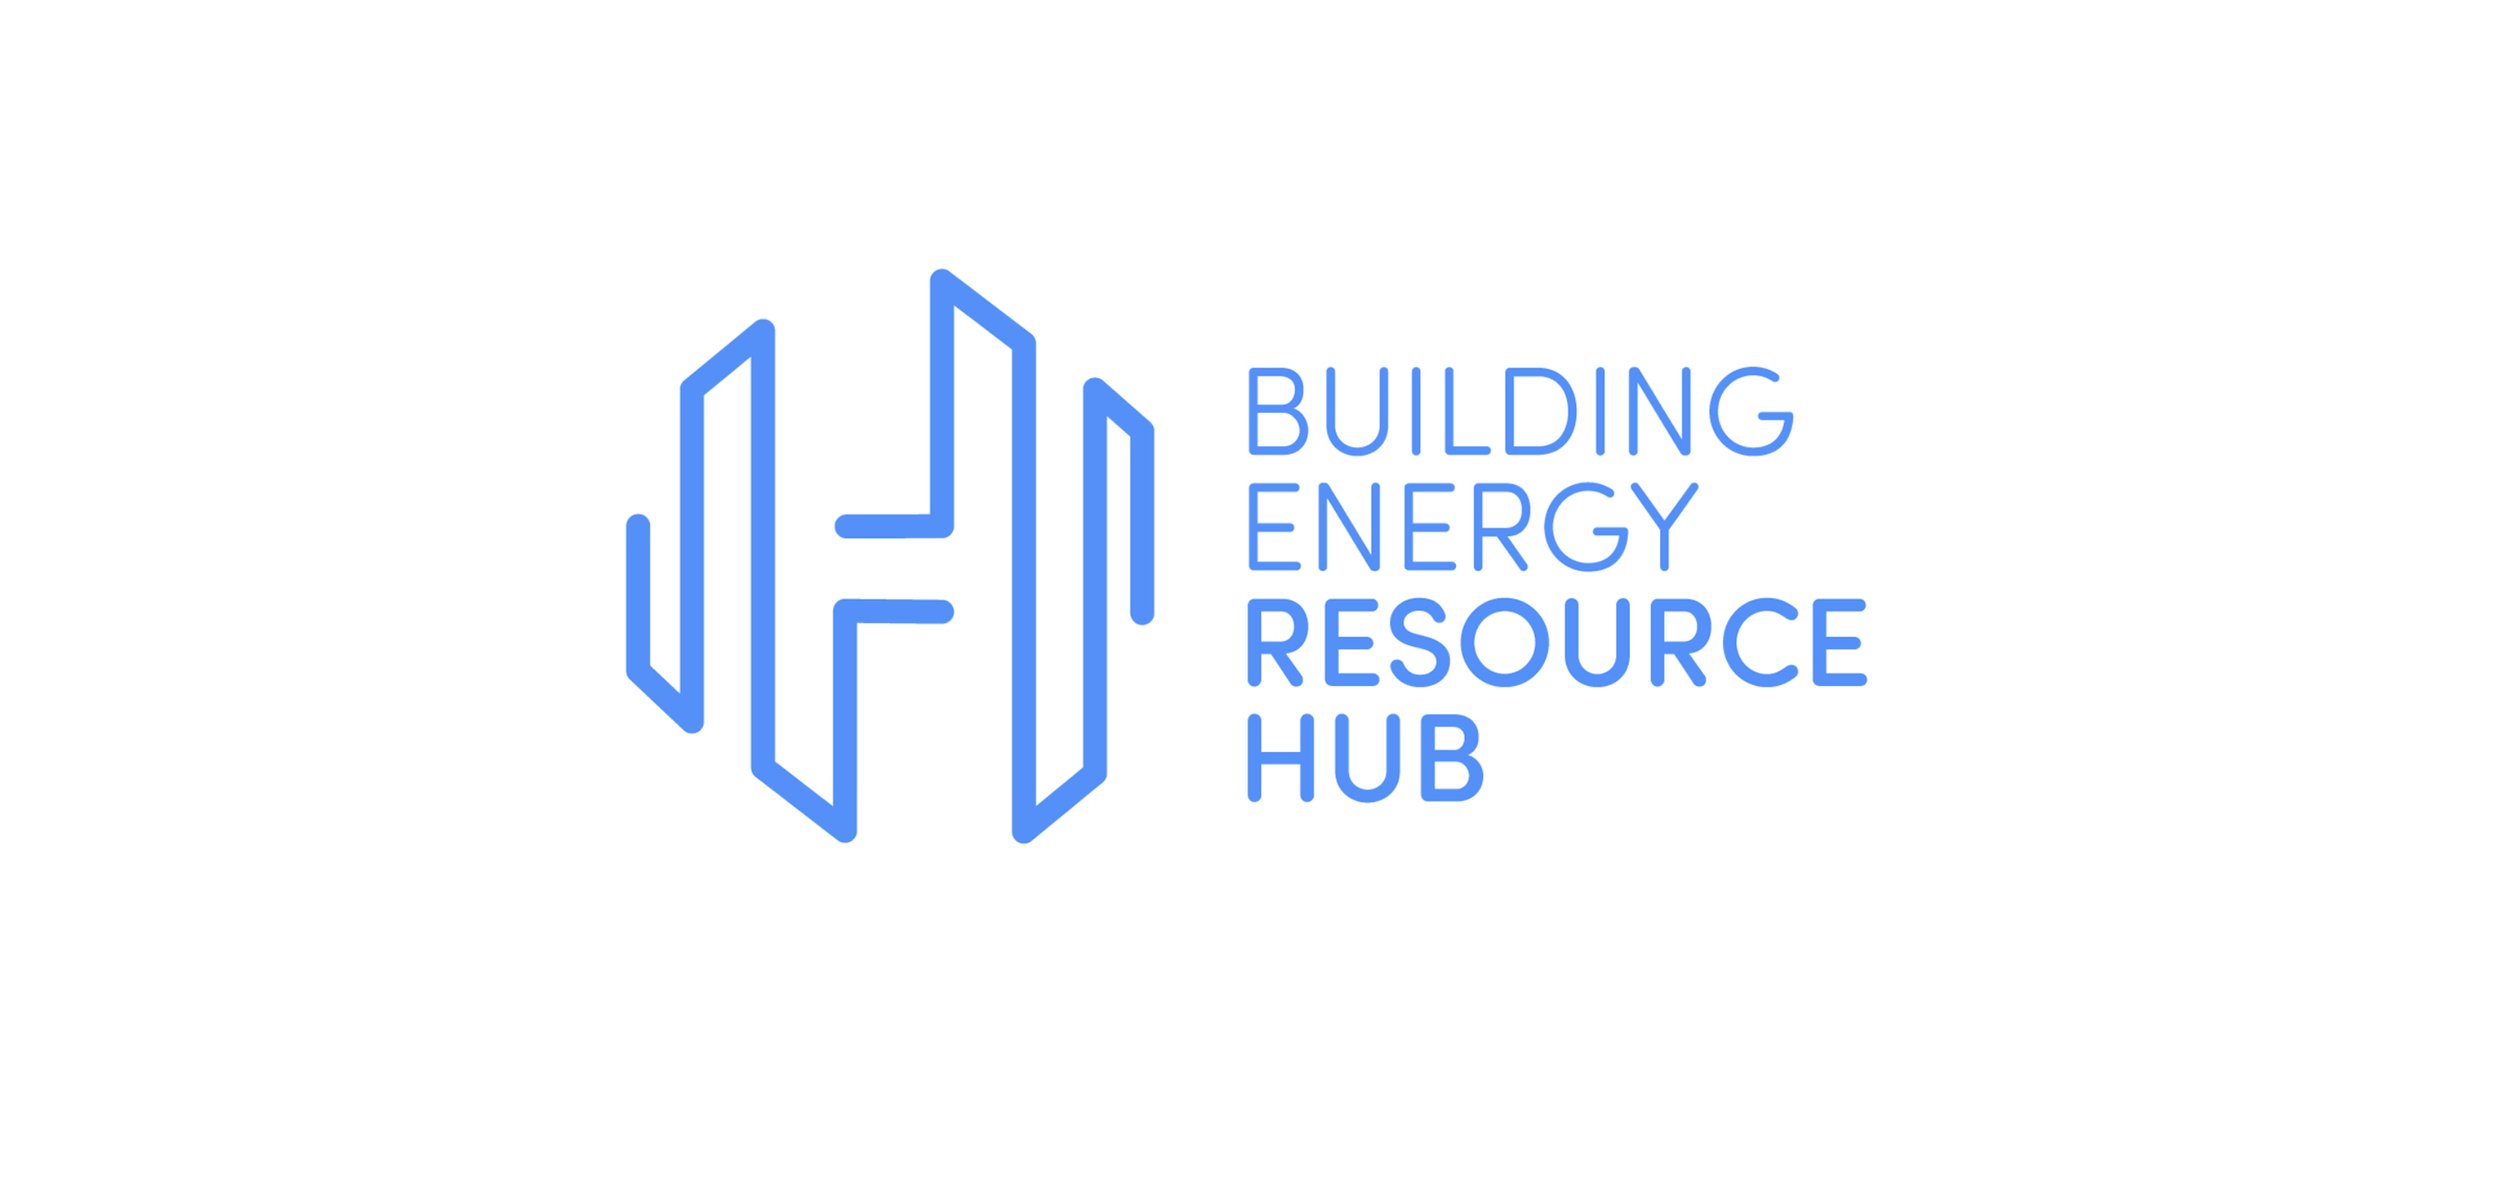 hub_logo.jpg